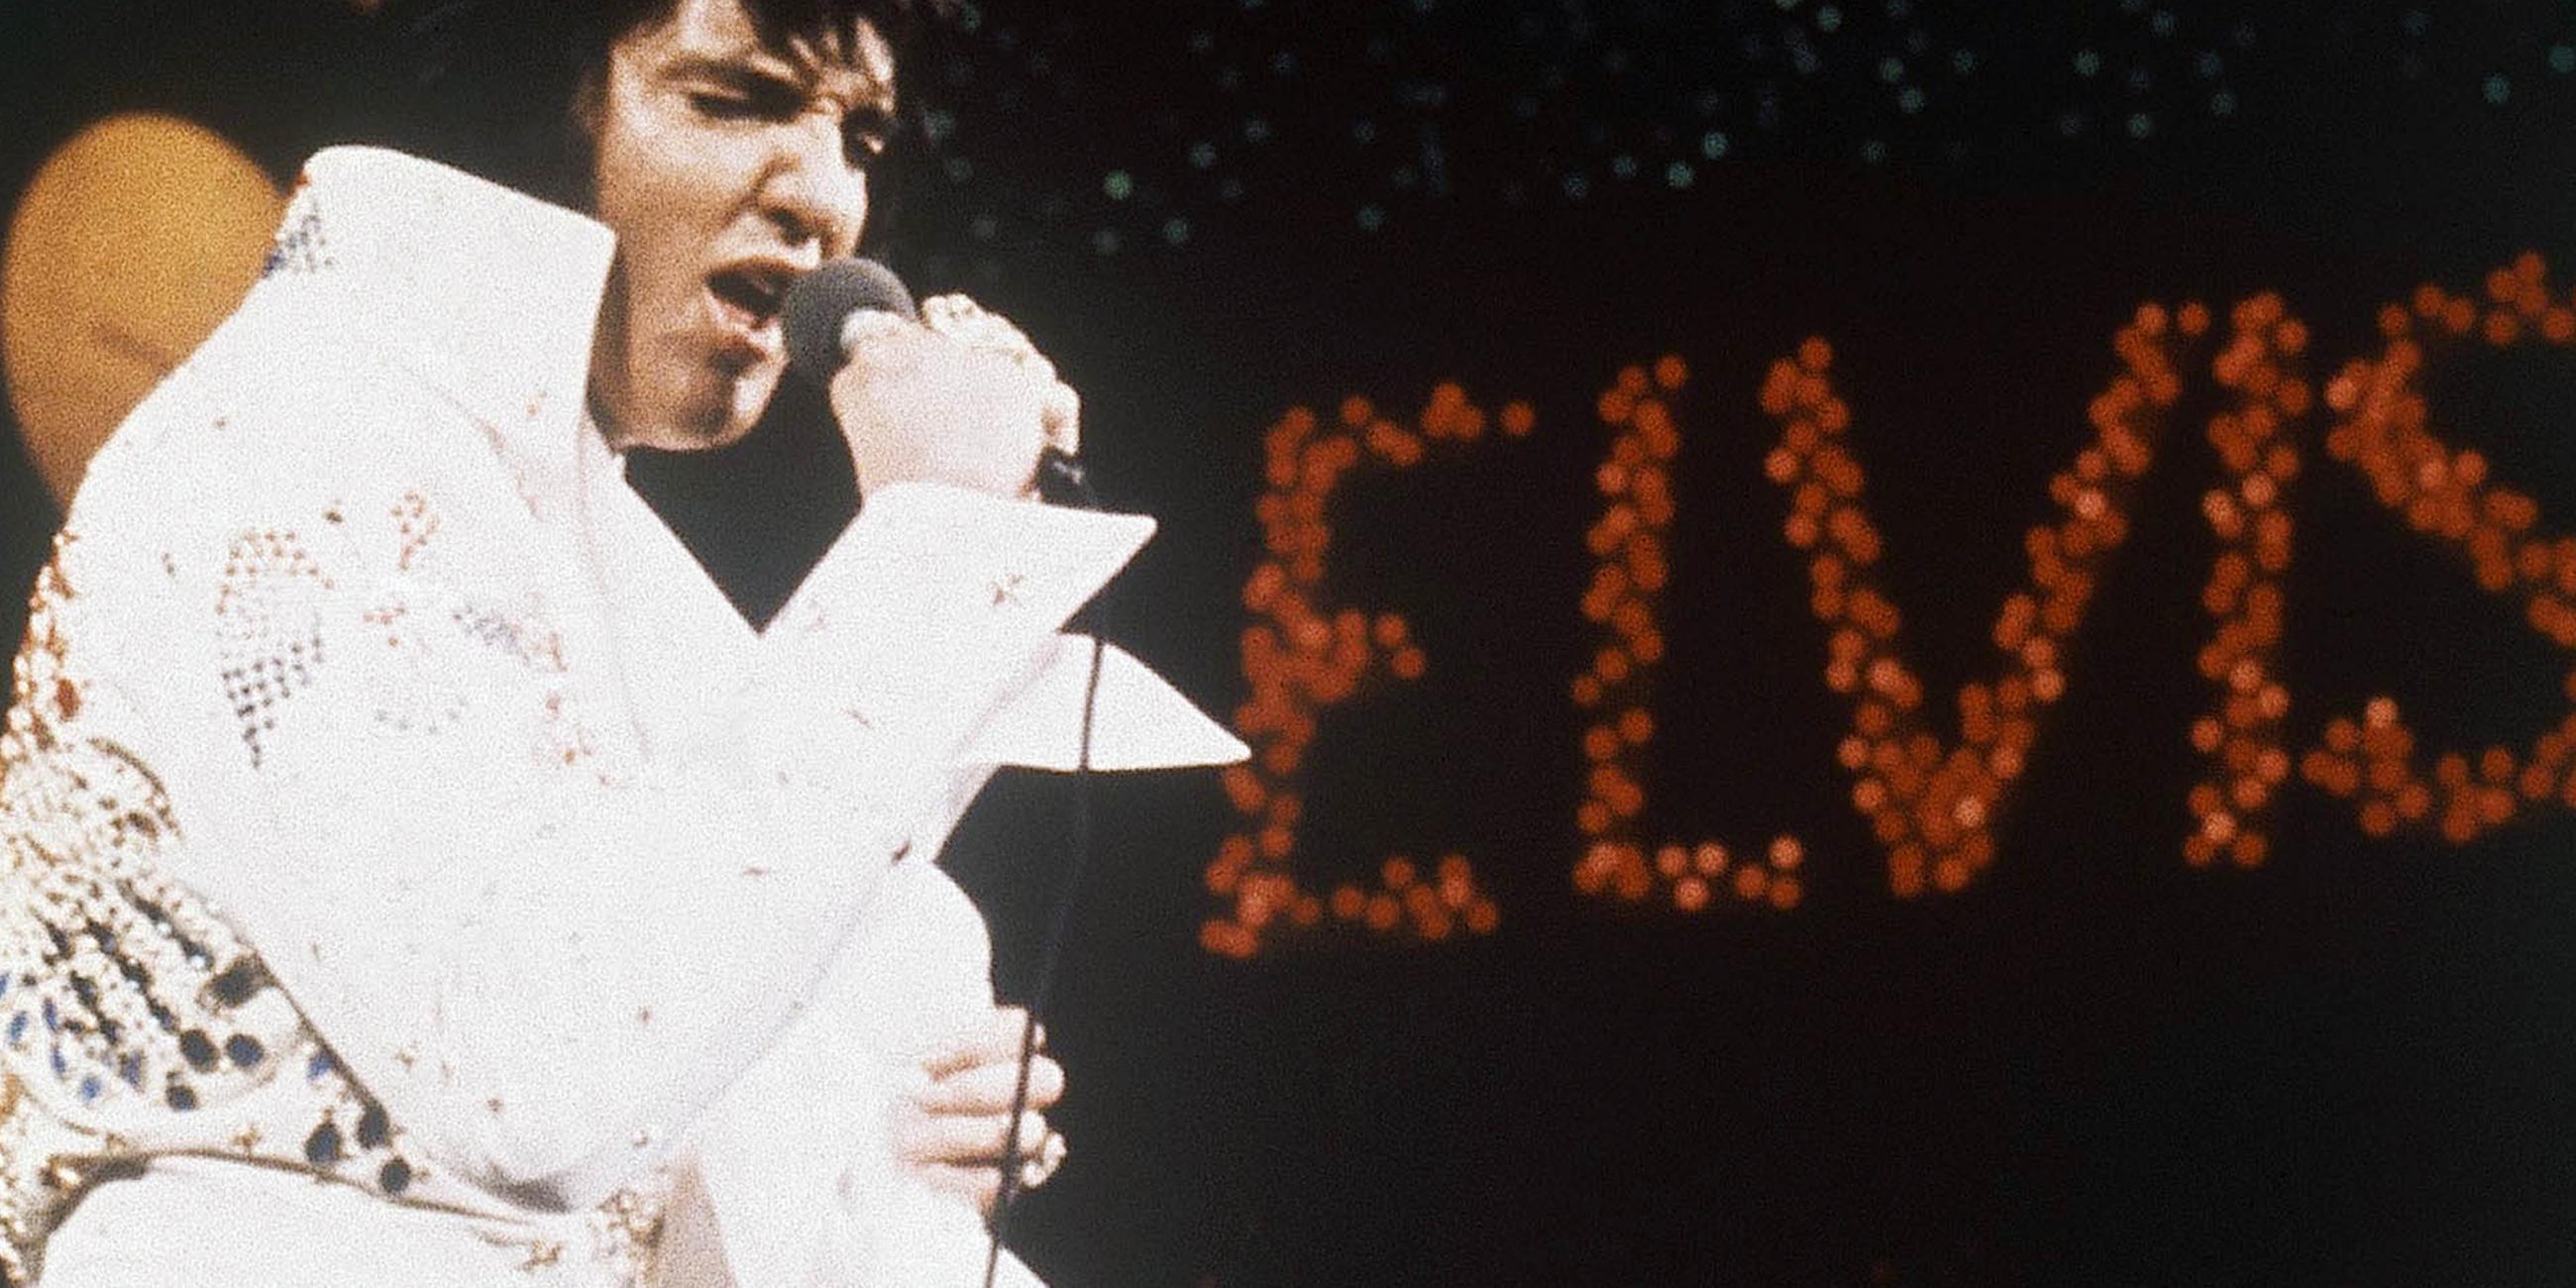 Nach einem Jahrzehnt mit zweitklassigen Kinofilmen will Elvis dann zurück auf die Konzertbühne. Er hat Drogen- und Alkoholprobleme. 